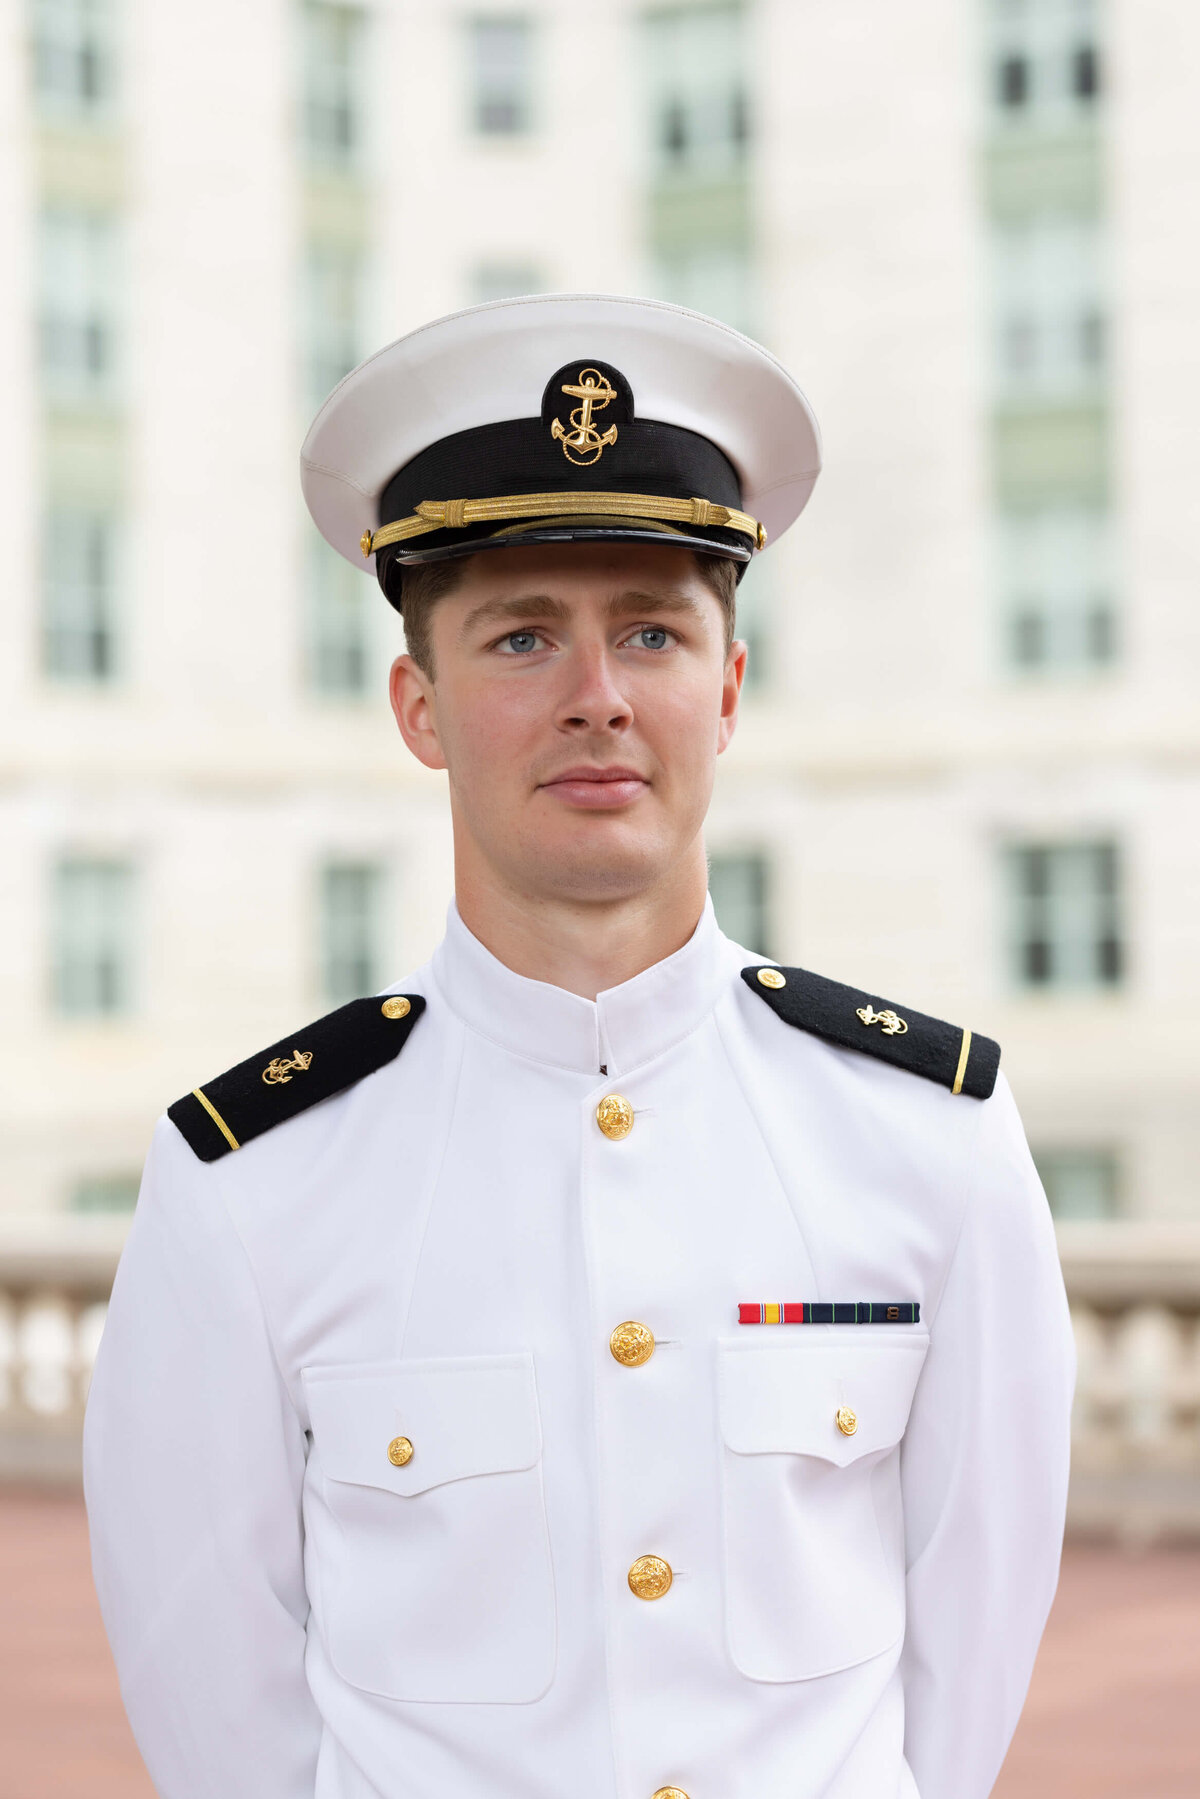 Senior Portrait in white uniform at Naval Academy.